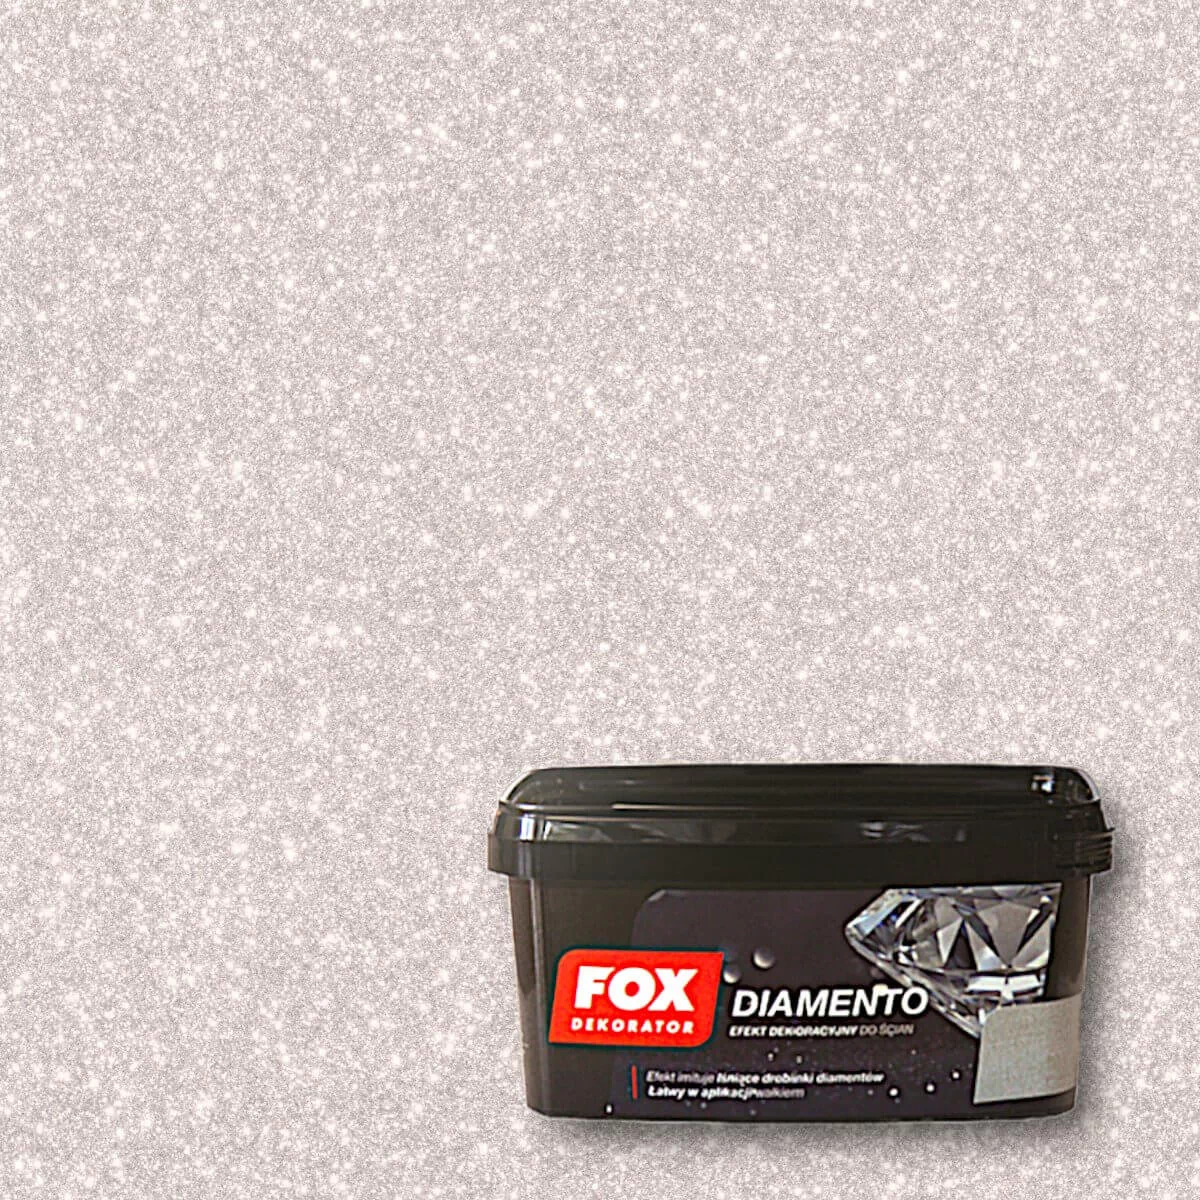 Fox Dekorator FOX FARBA dekoracyjna DIAMENTO, MARS kolor 0002 1L n.FX-FD-DIAM-0002-01